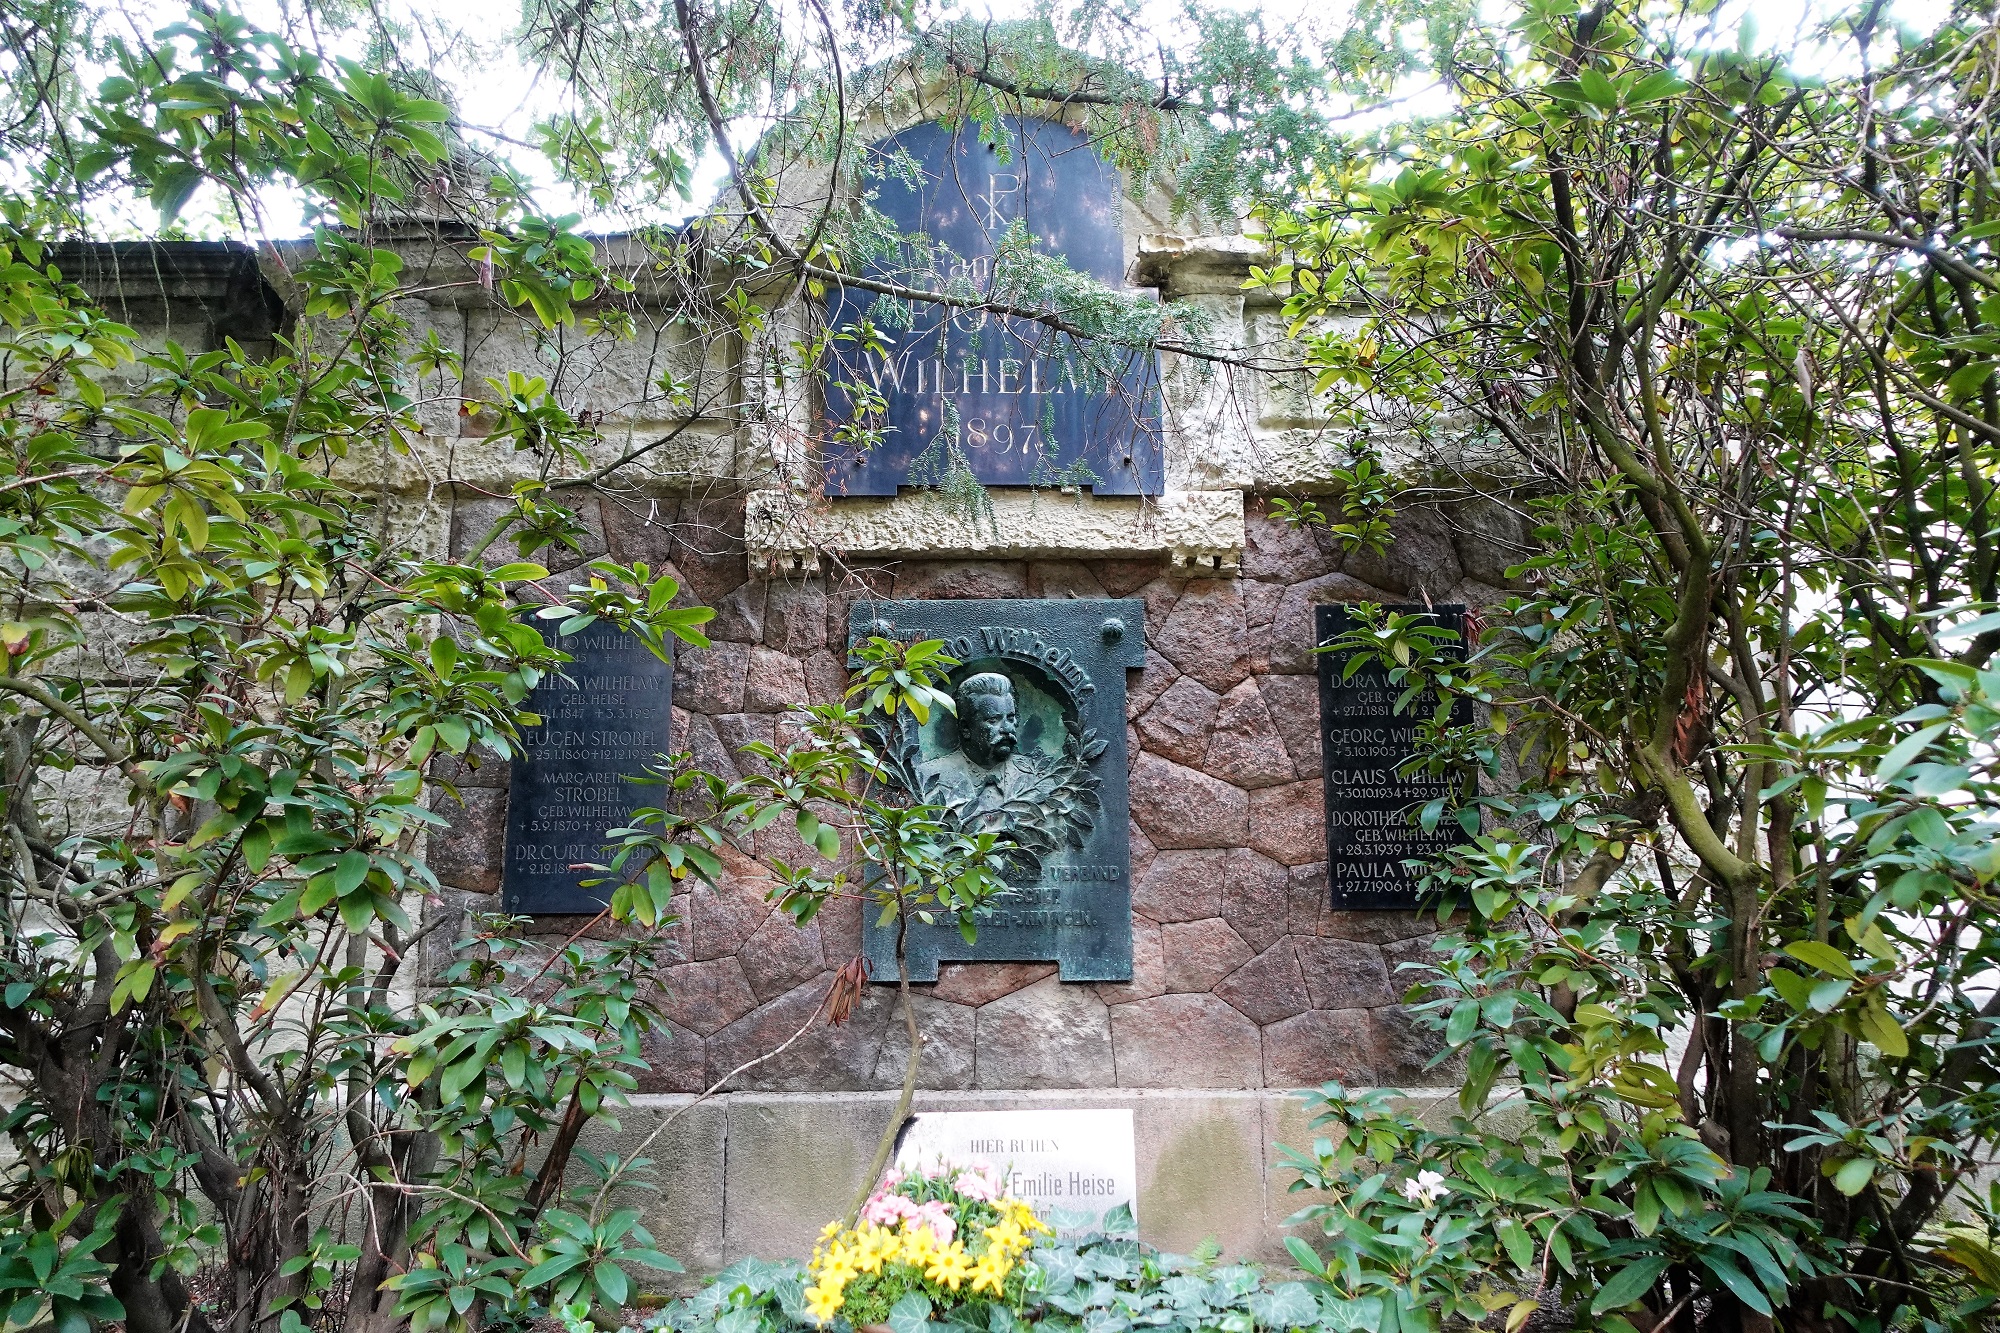 Südfriedhof Wandstelle No.56 „Wilhelmy“